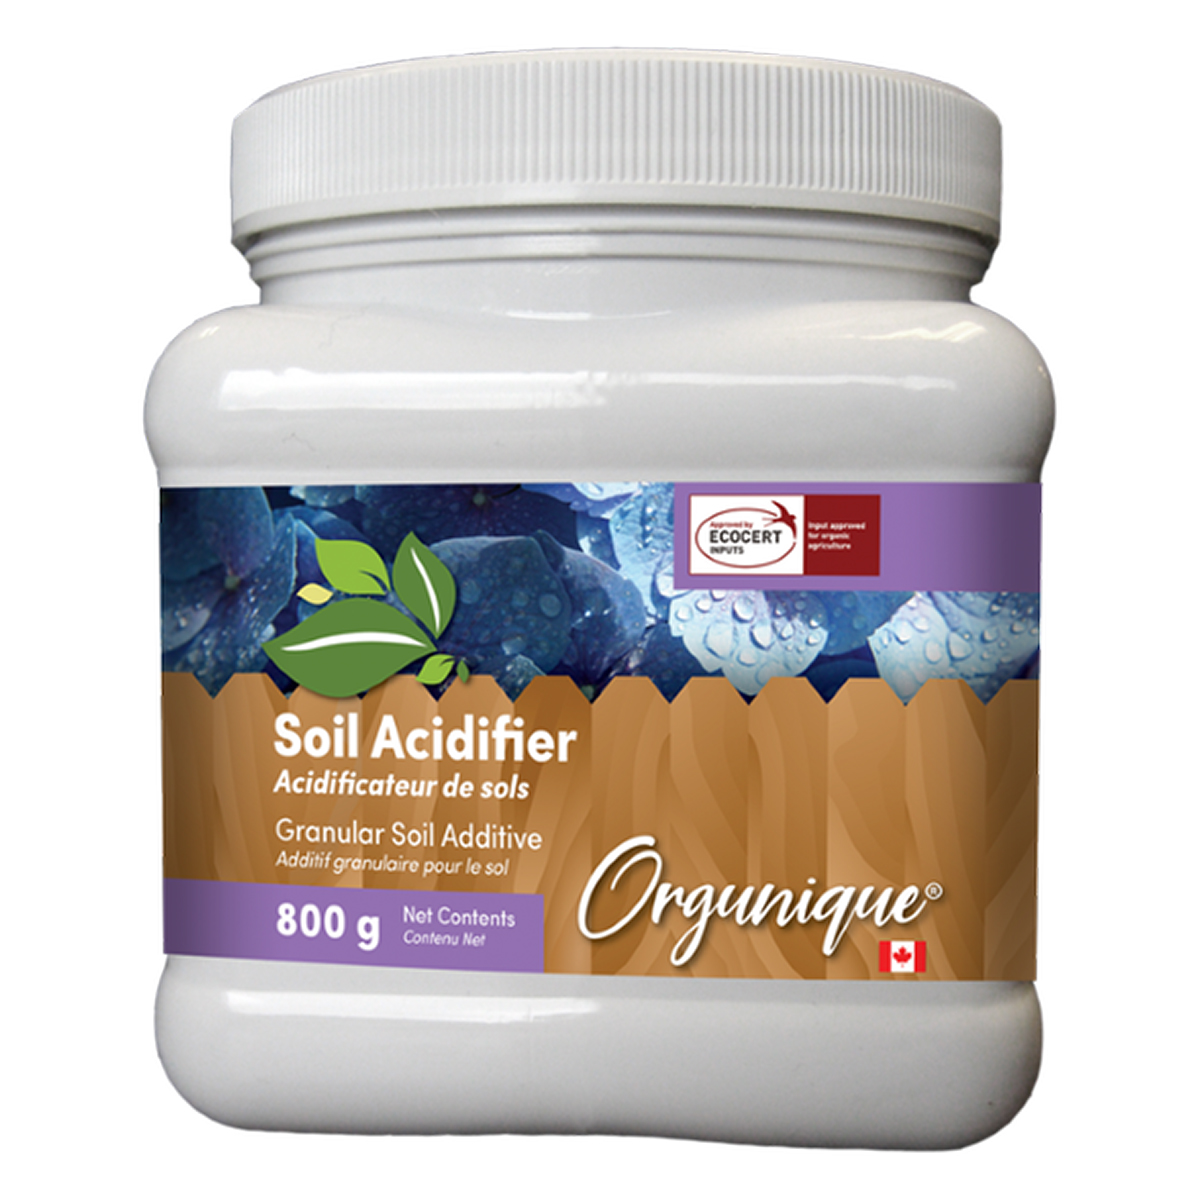 Picture of Orgunique Soil Acidifier 0-0-0+90S 800g